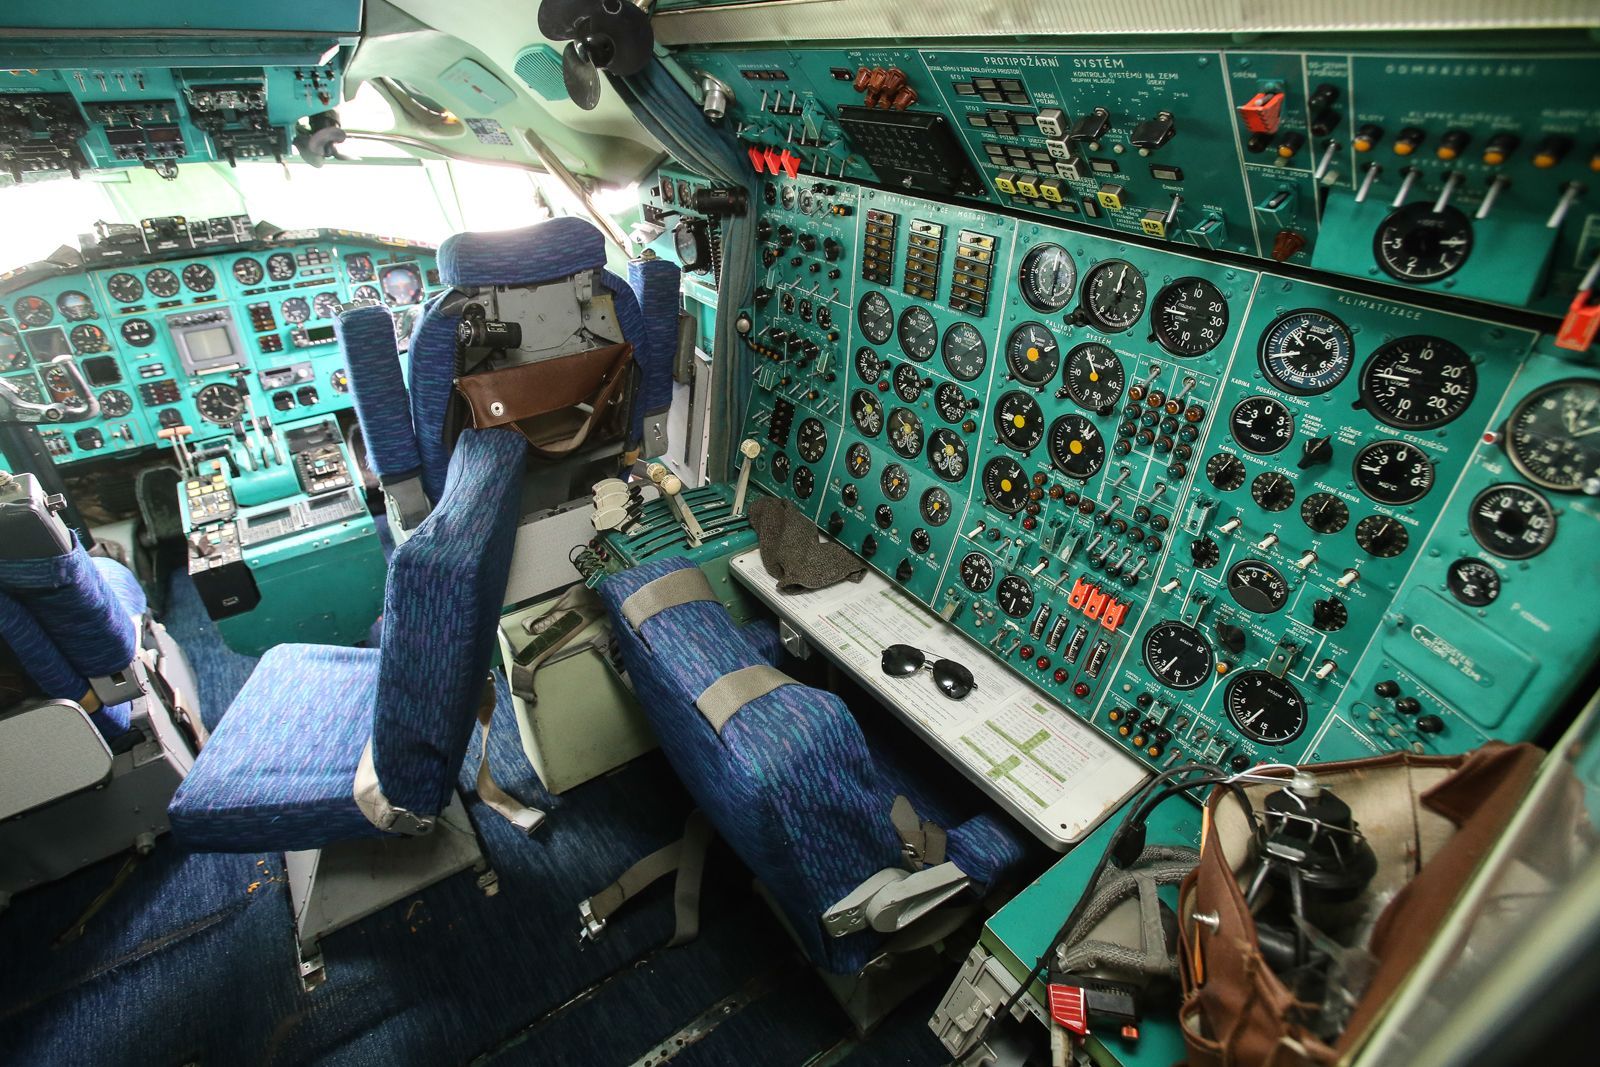 Oprava starých vládních letadel Tupolev - Velký přelet